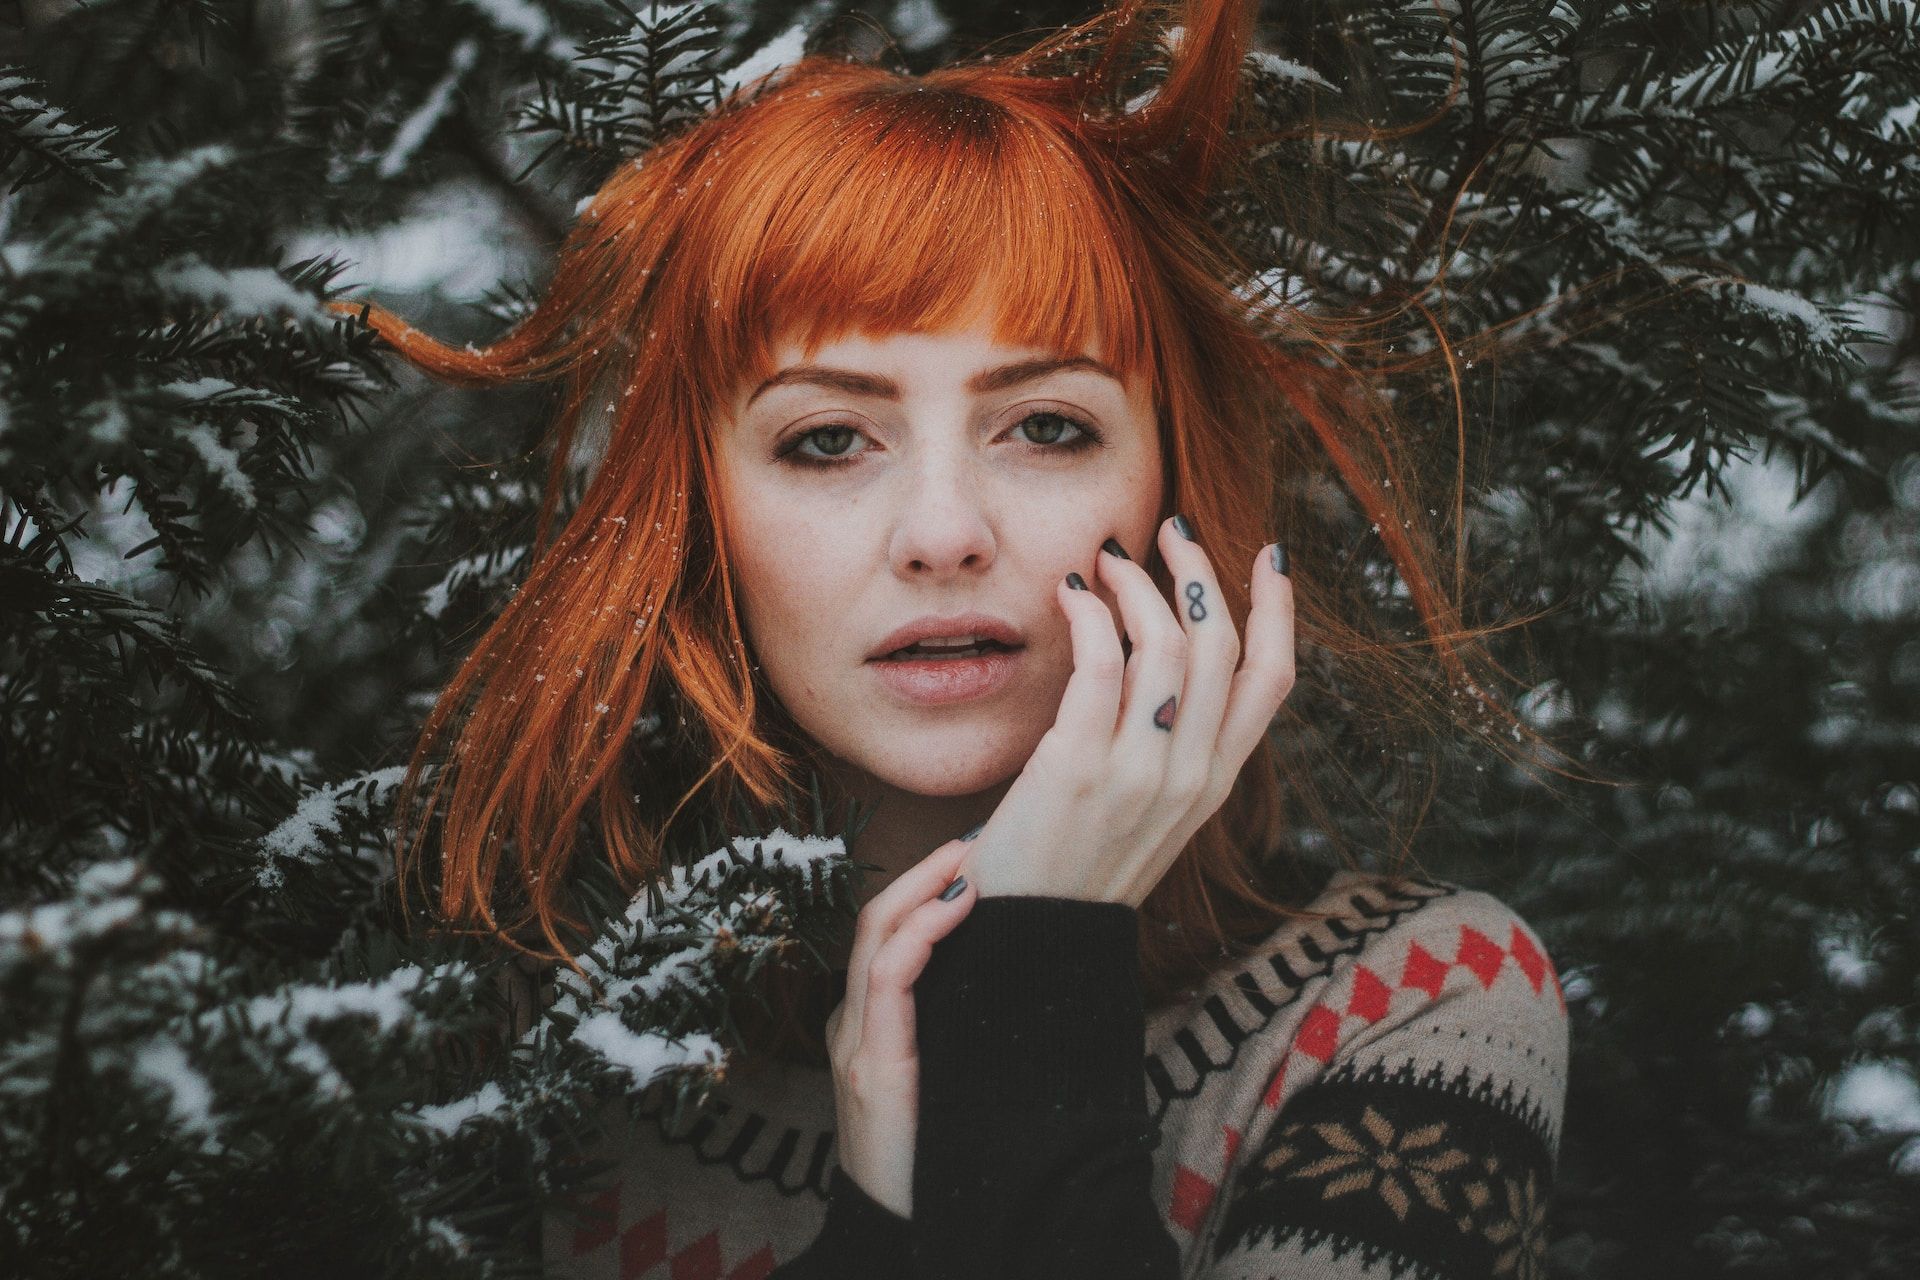 Dziewczyna o rudych włosach na tle choinki zimą